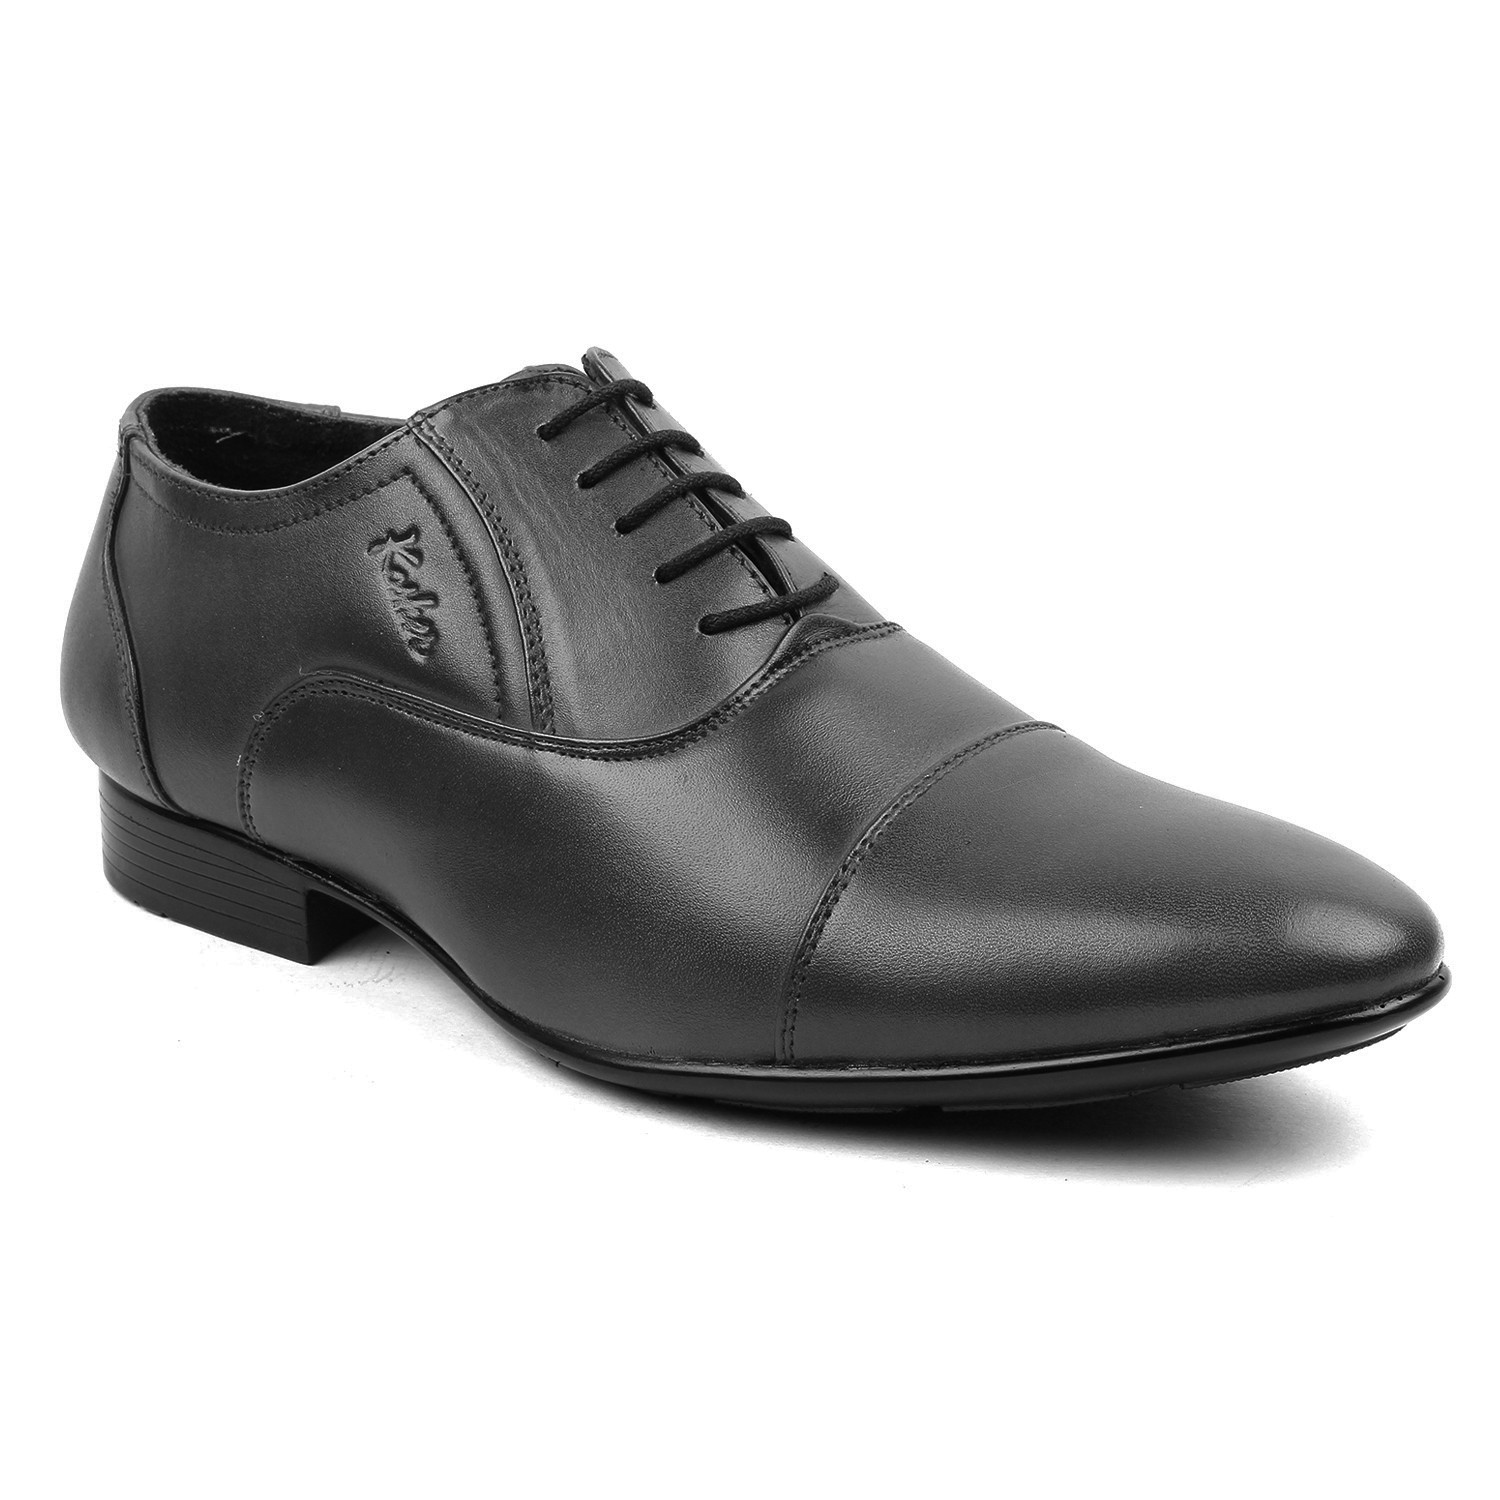 Leather Shoes Black - SHOES - MEN SHOES